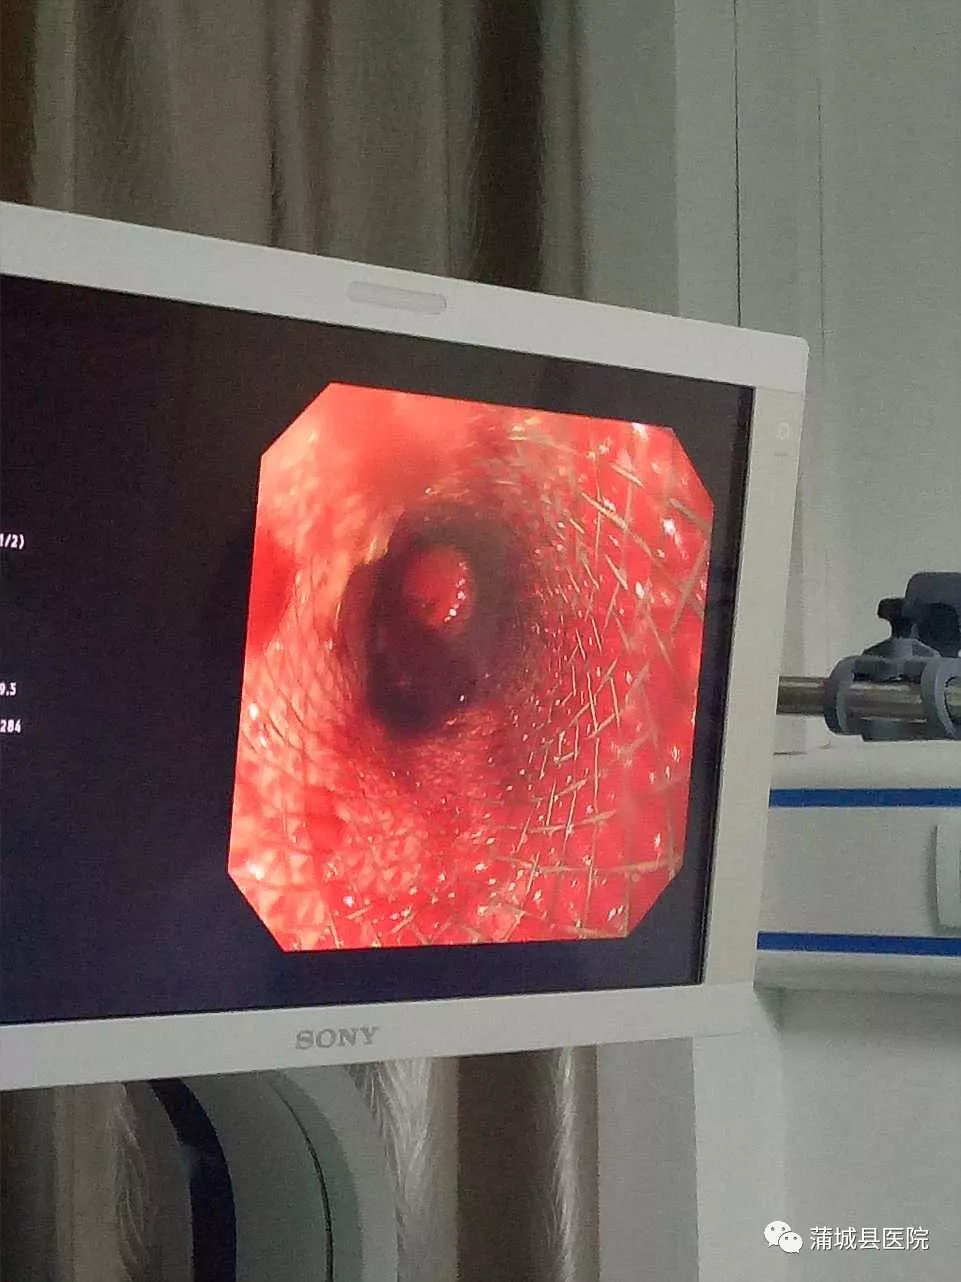 蒲城县医院消化肿瘤科自成立以来,内镜下治疗已逐步开展息肉切除术